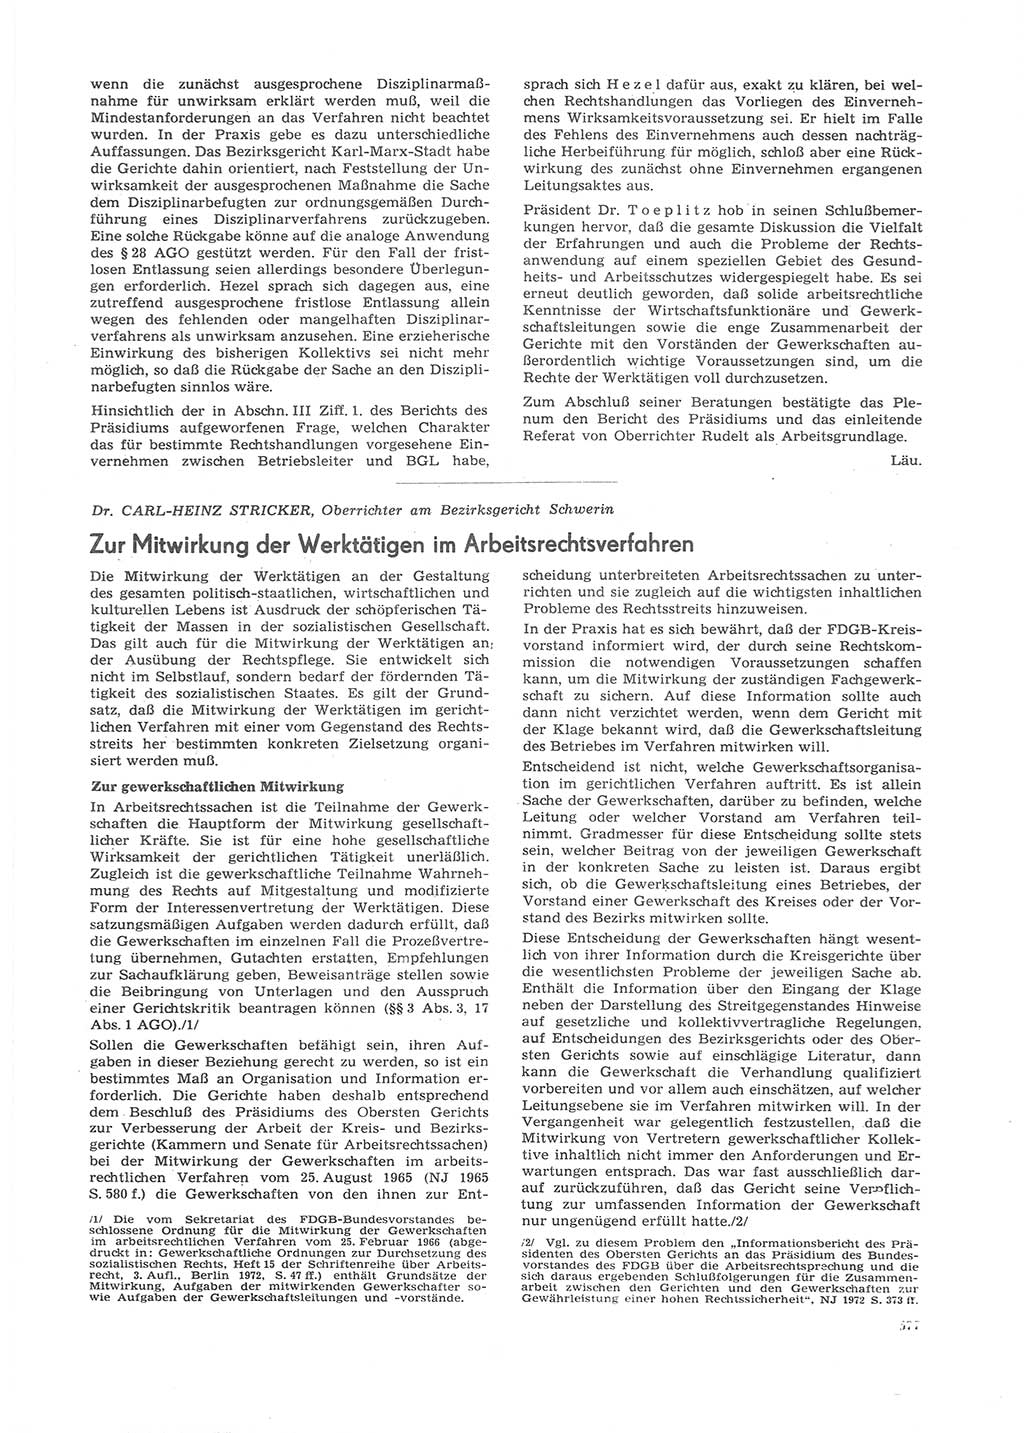 Neue Justiz (NJ), Zeitschrift für Recht und Rechtswissenschaft [Deutsche Demokratische Republik (DDR)], 26. Jahrgang 1972, Seite 577 (NJ DDR 1972, S. 577)